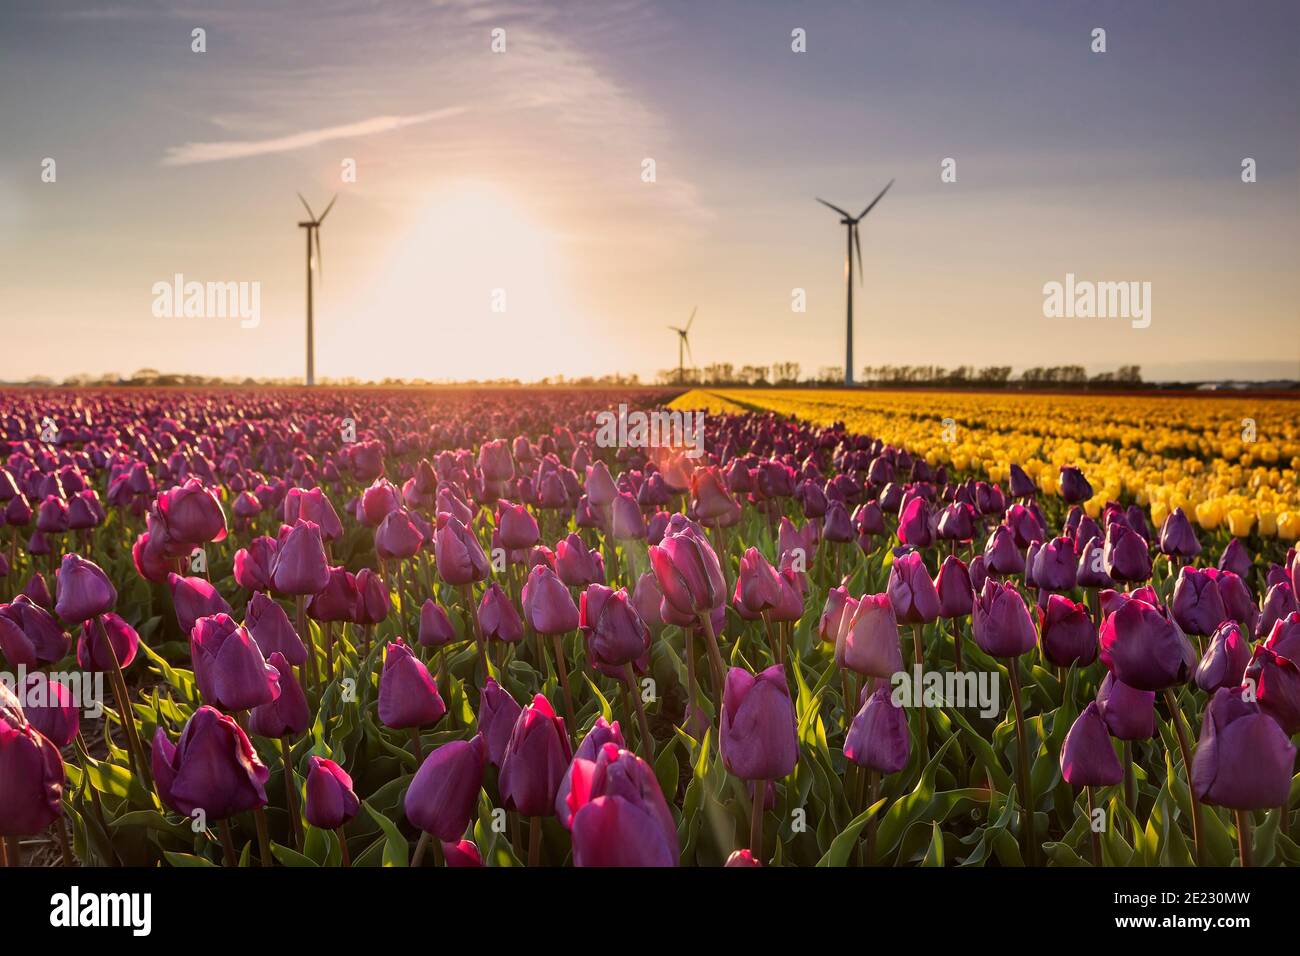 Champs de tulipes violet et jaune et éoliennes, Hollande Banque D'Images